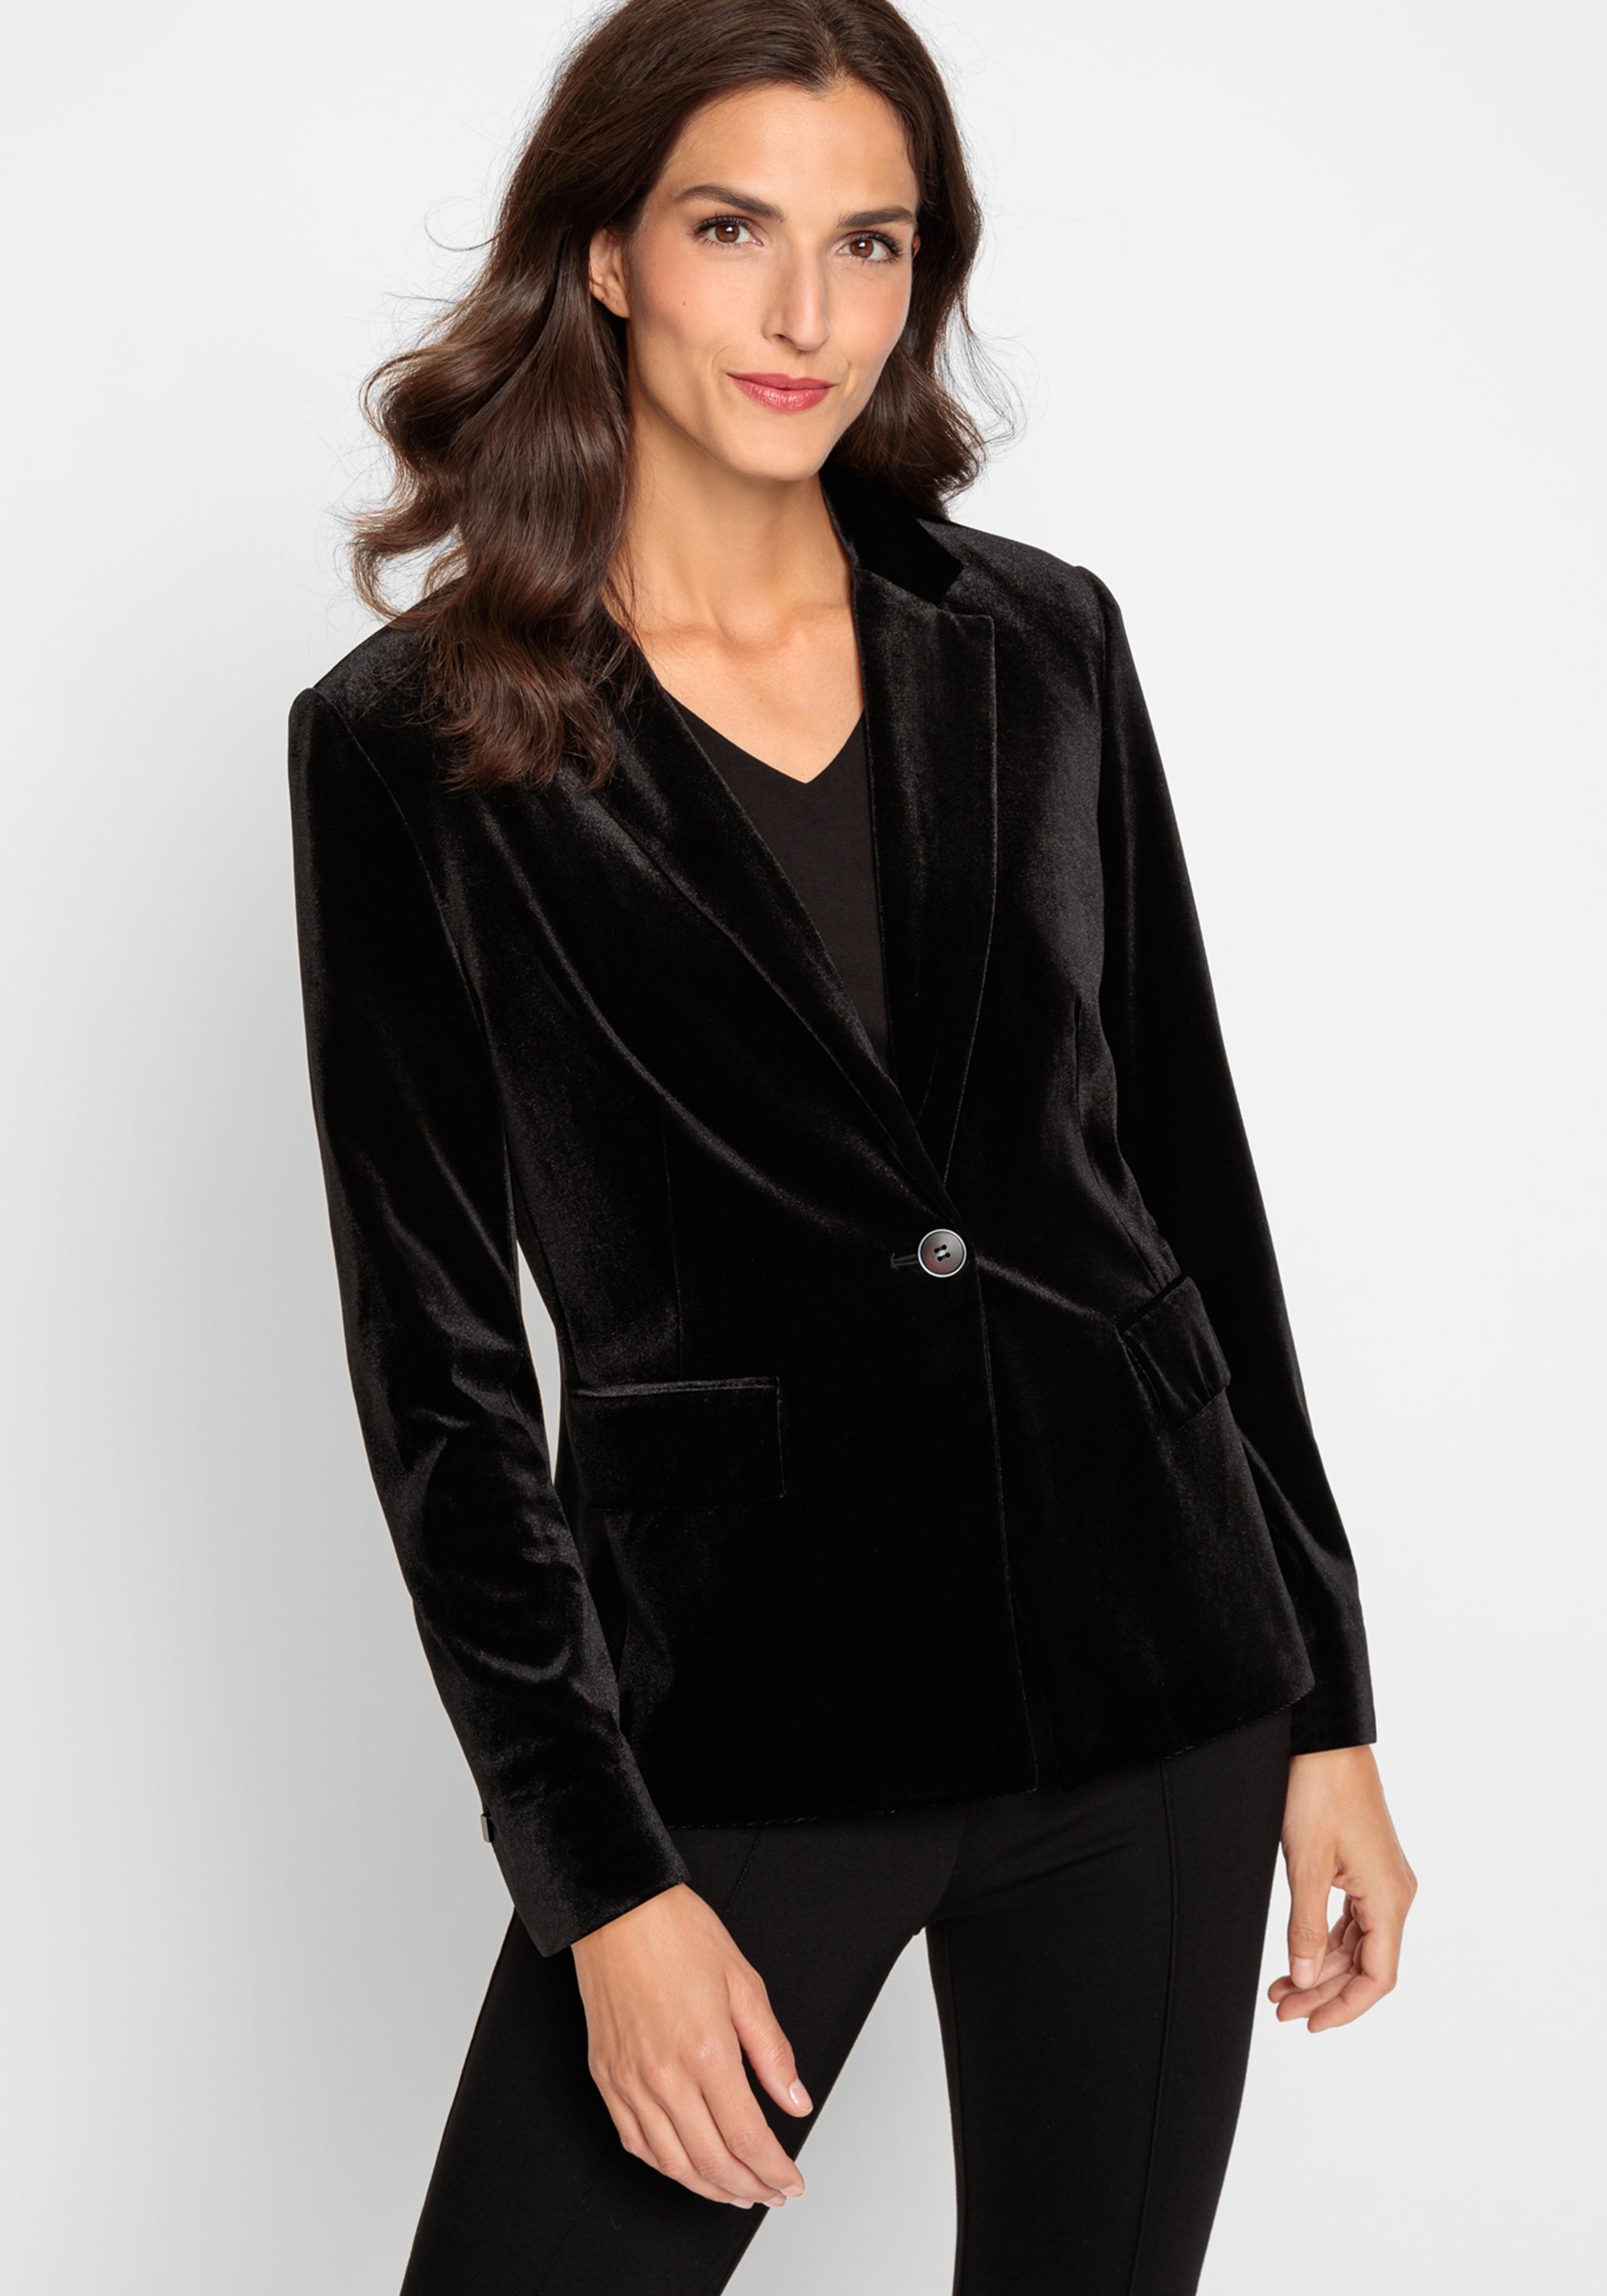 Plus-Size Velvet Jackets & Blazers Shopping Guide  Velvet clothes, Velvet  blazer women, Blazer outfits for women